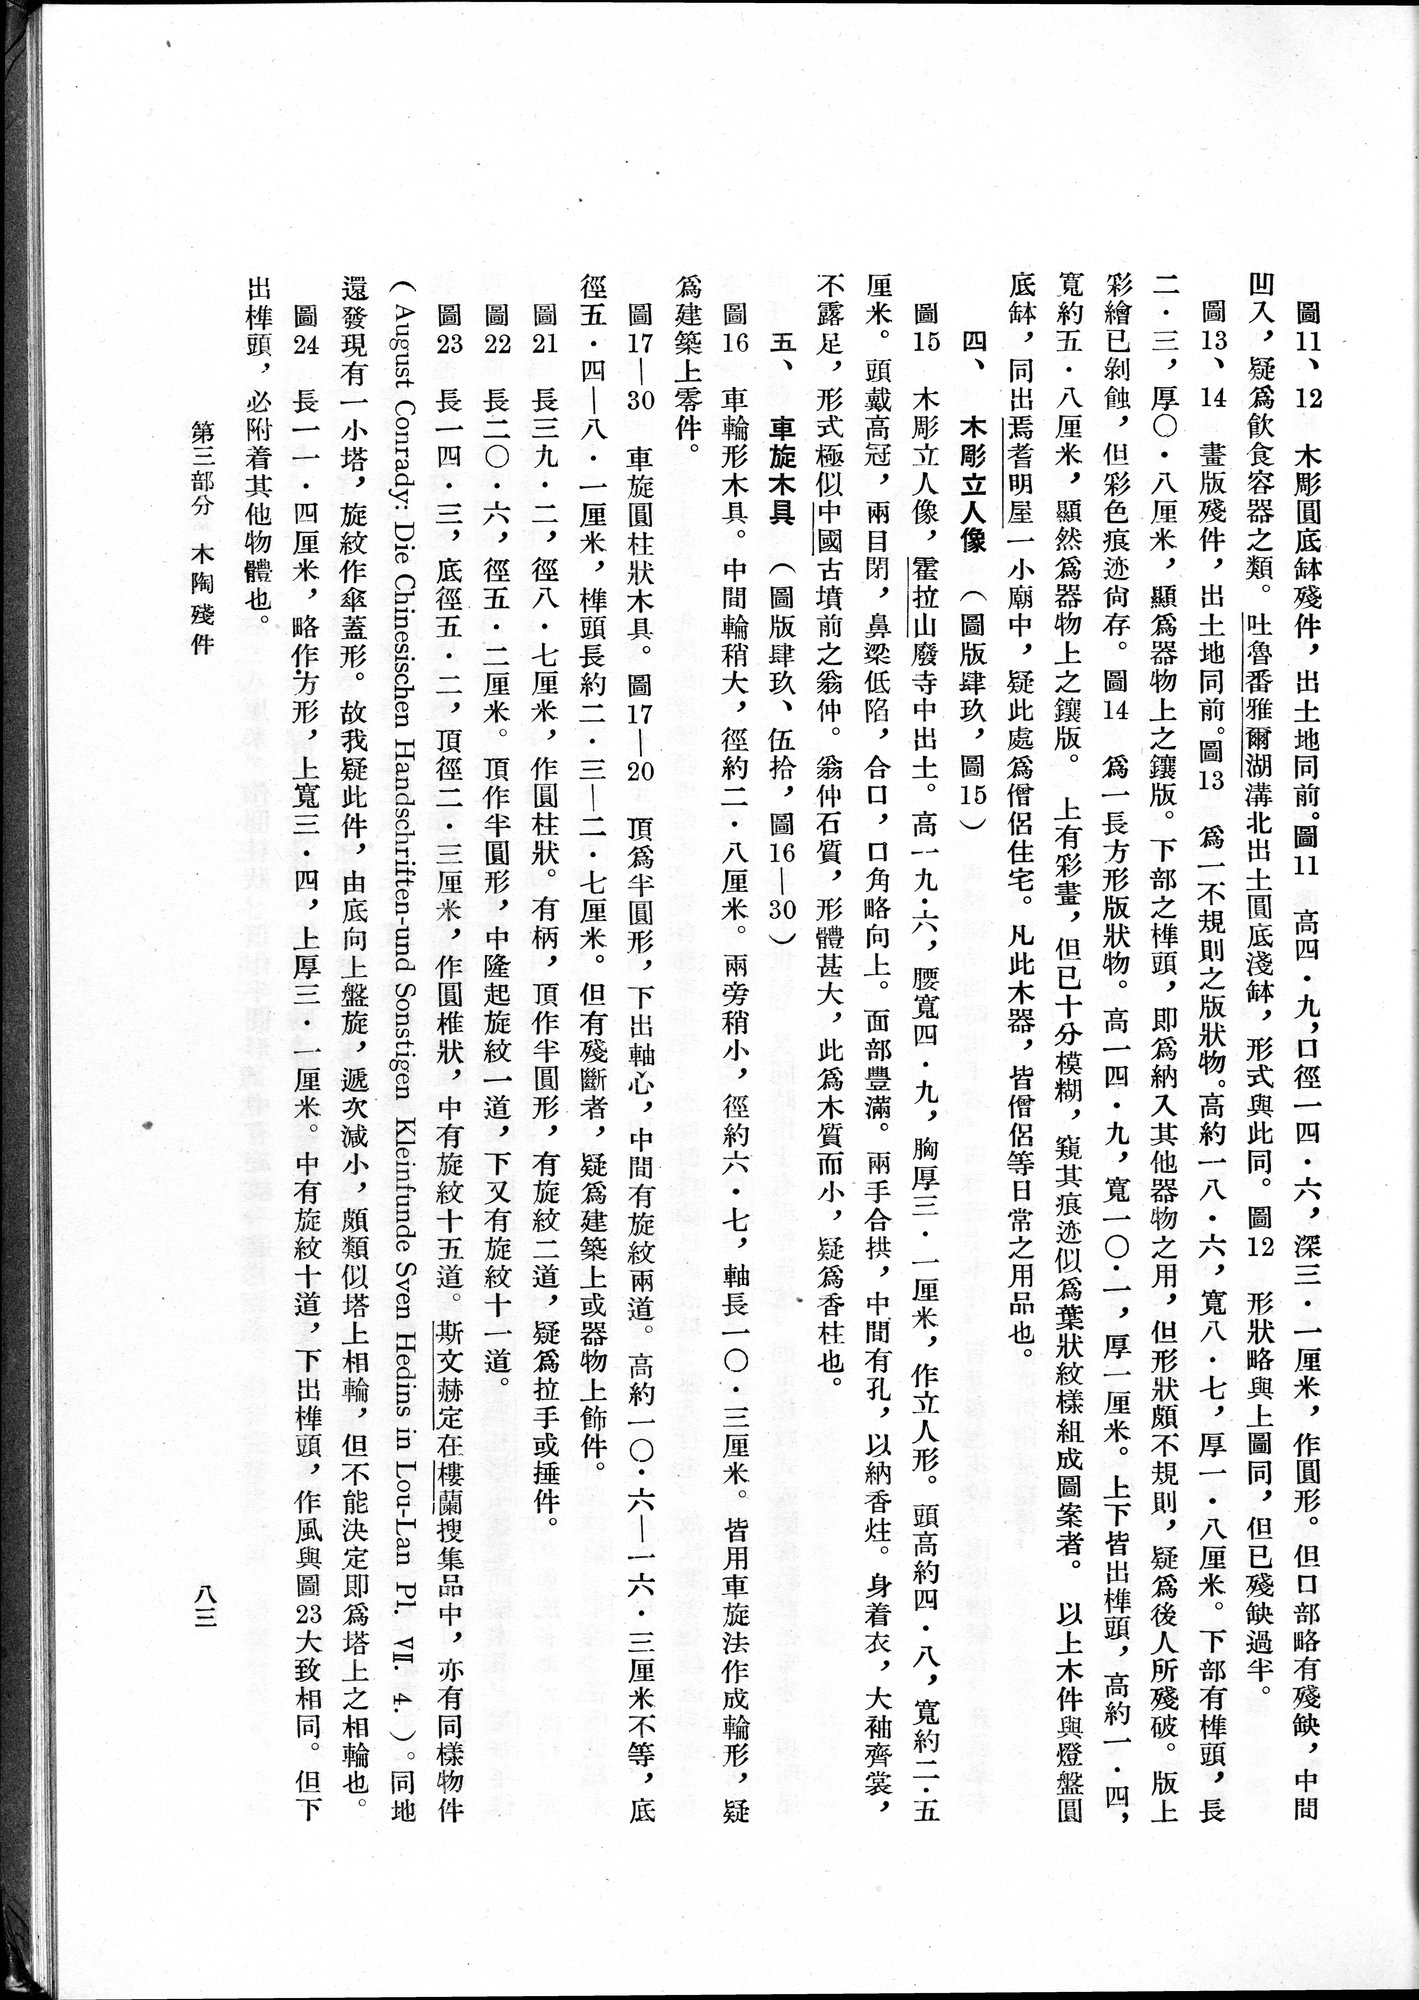 塔里木盆地考古記 : vol.1 / Page 147 (Grayscale High Resolution Image)